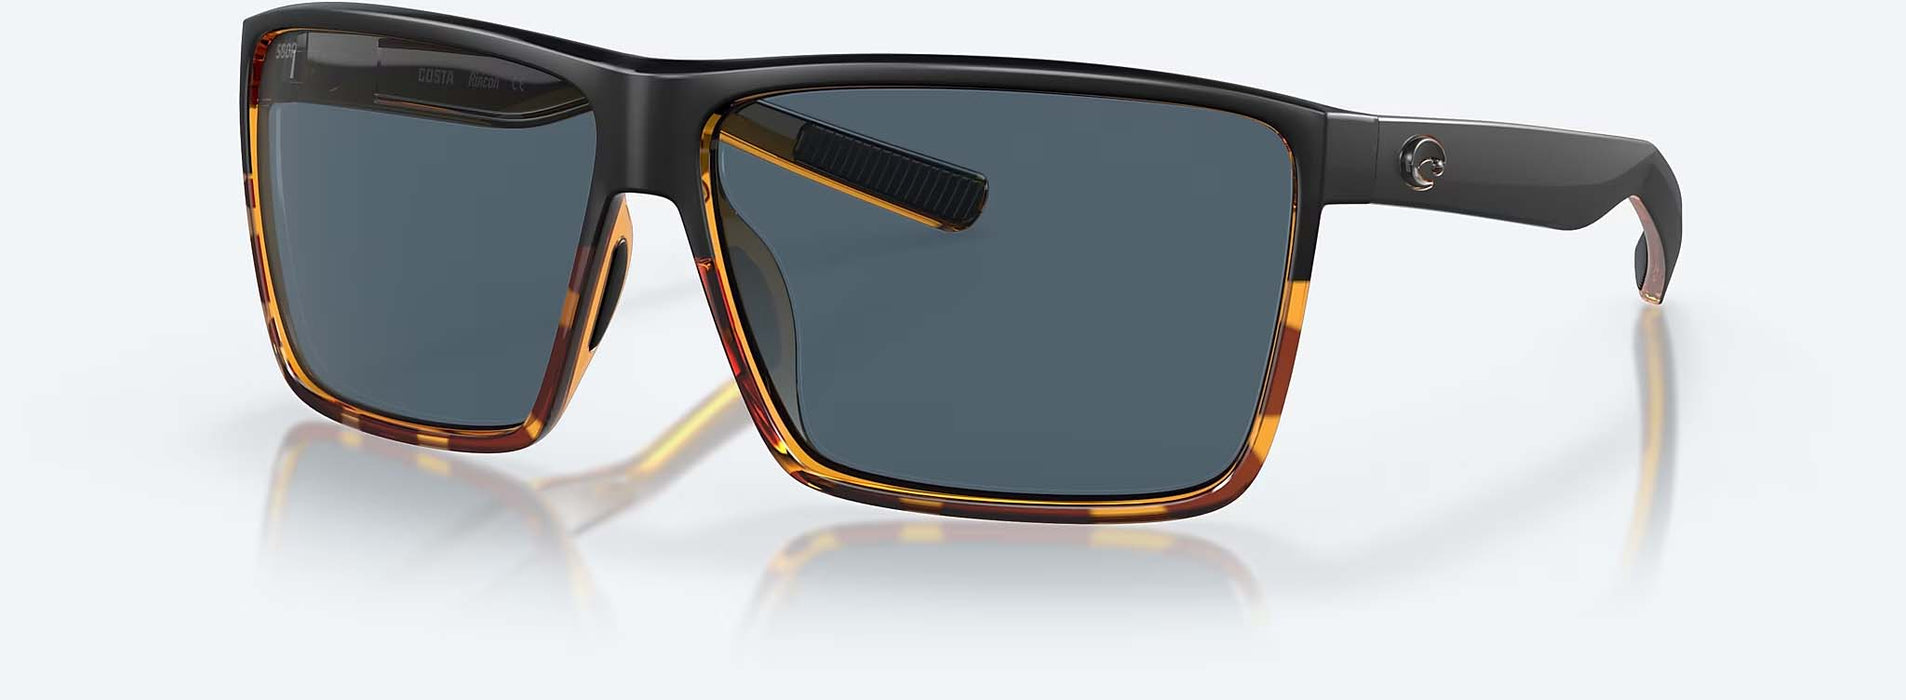 Costa Rincon Polarized Polycarbonate Sunglasses